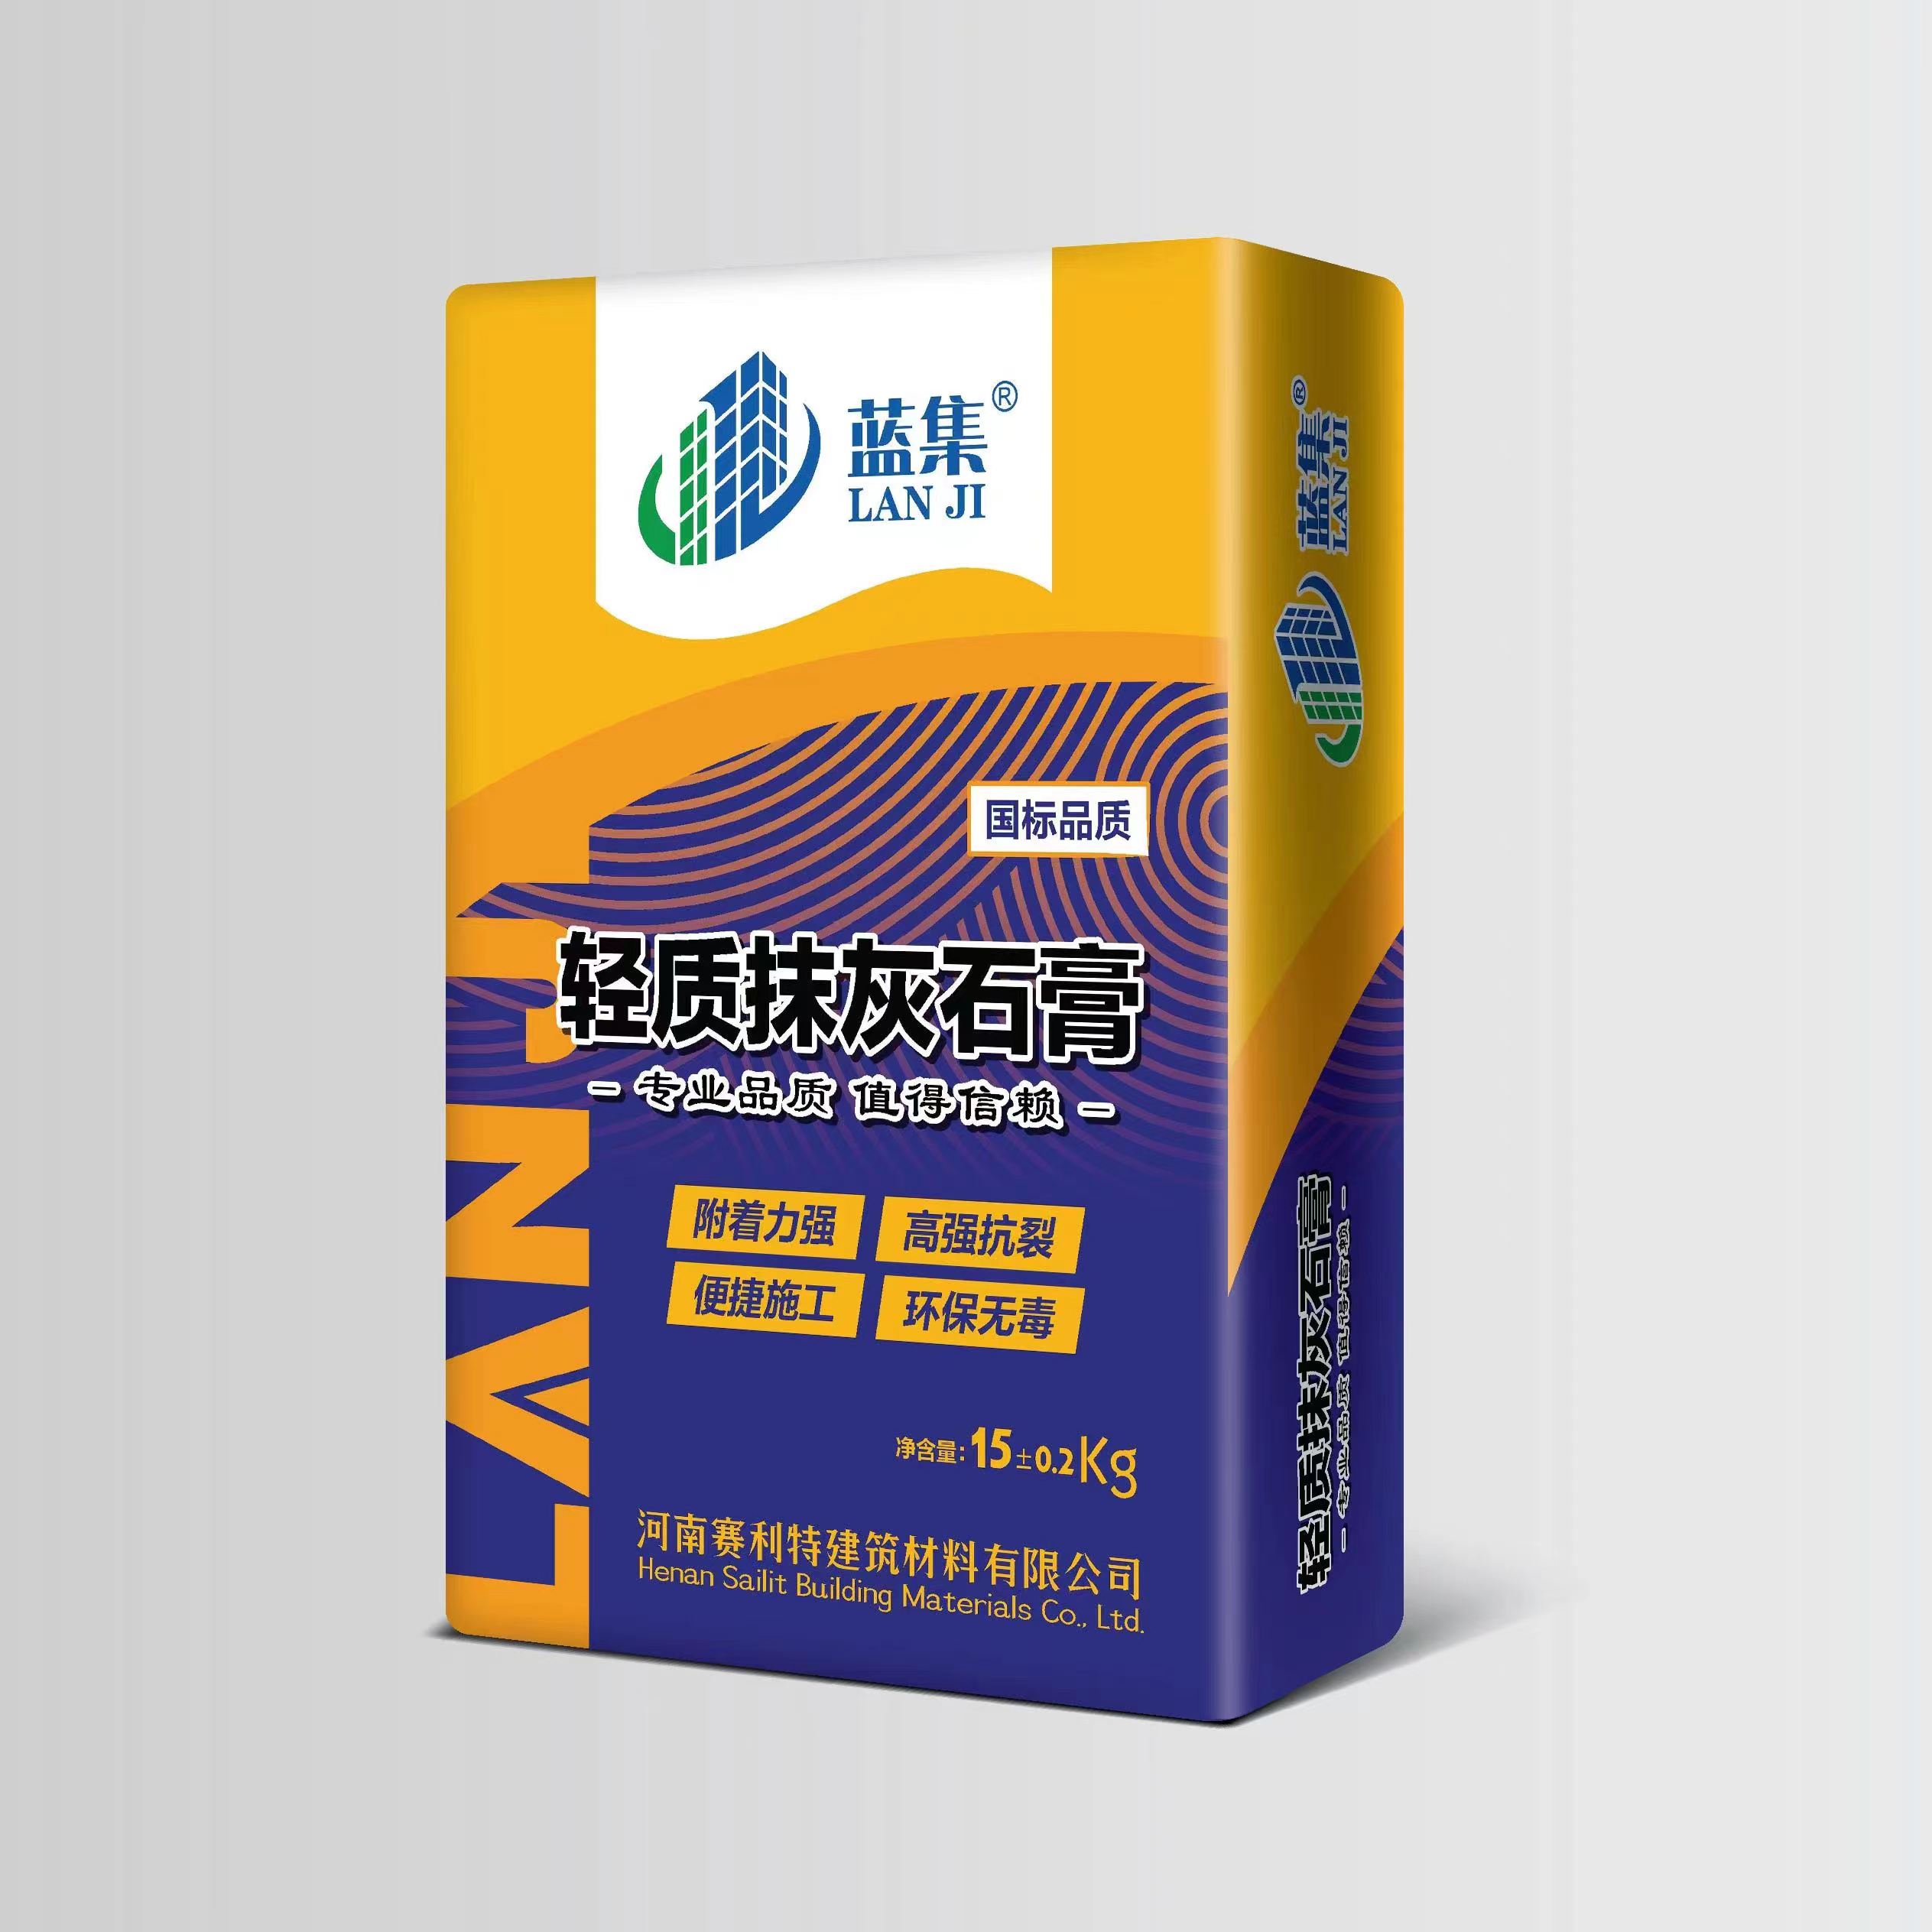 瓷砖胶画册设计-郑州画册设计 宣传册设计 产品包装设计 可以选择郑州皮壹设计